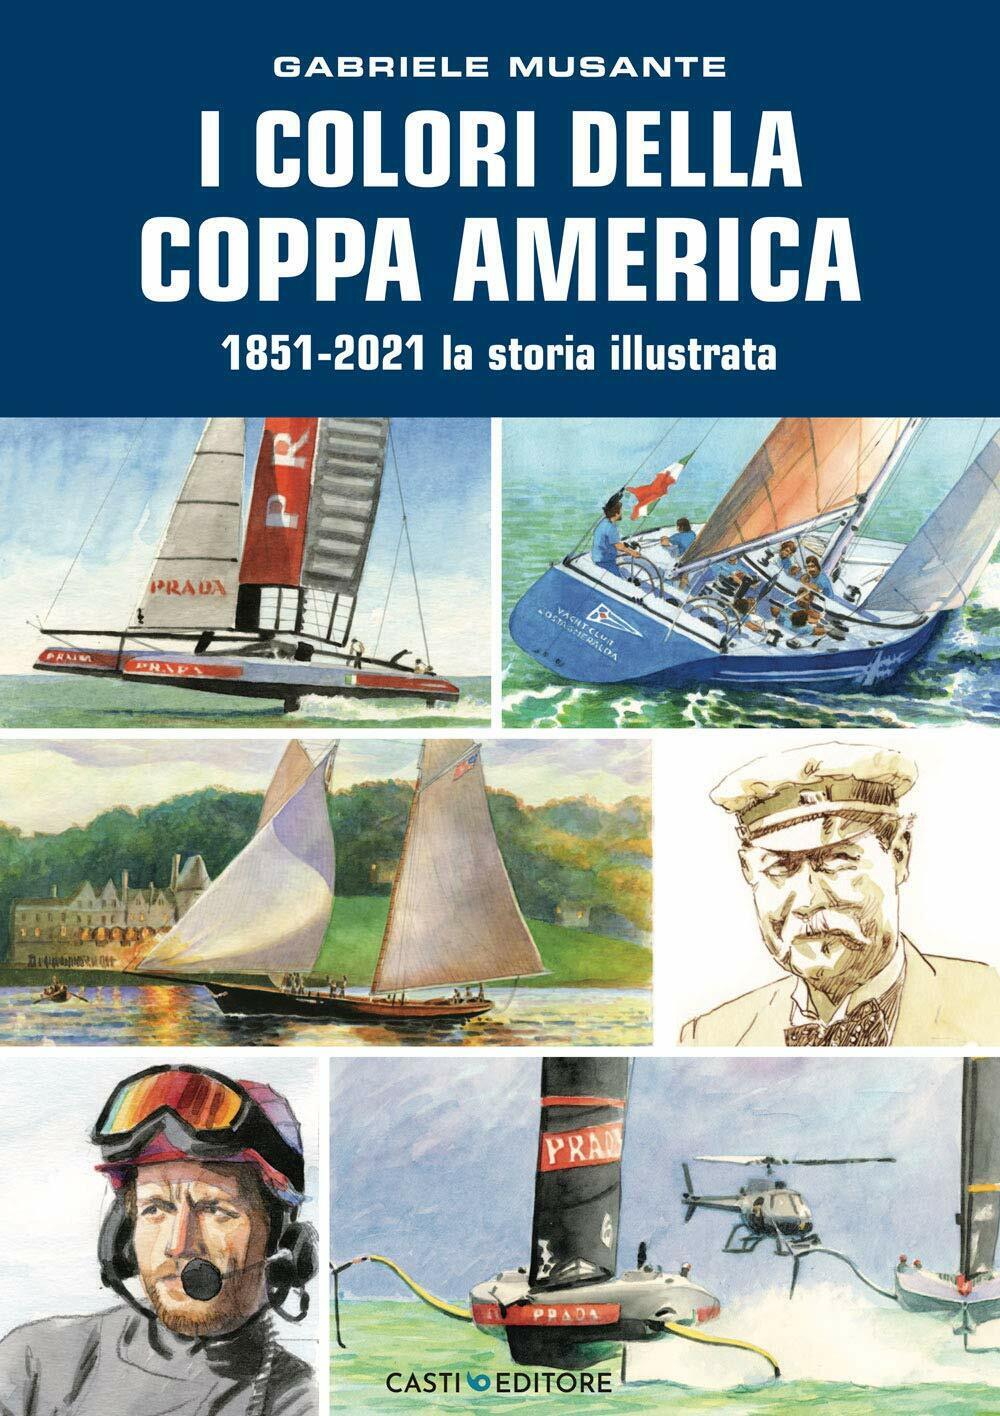 I colori della Coppa America 1851-2021 - Gabriele Musante - Casti, 2021